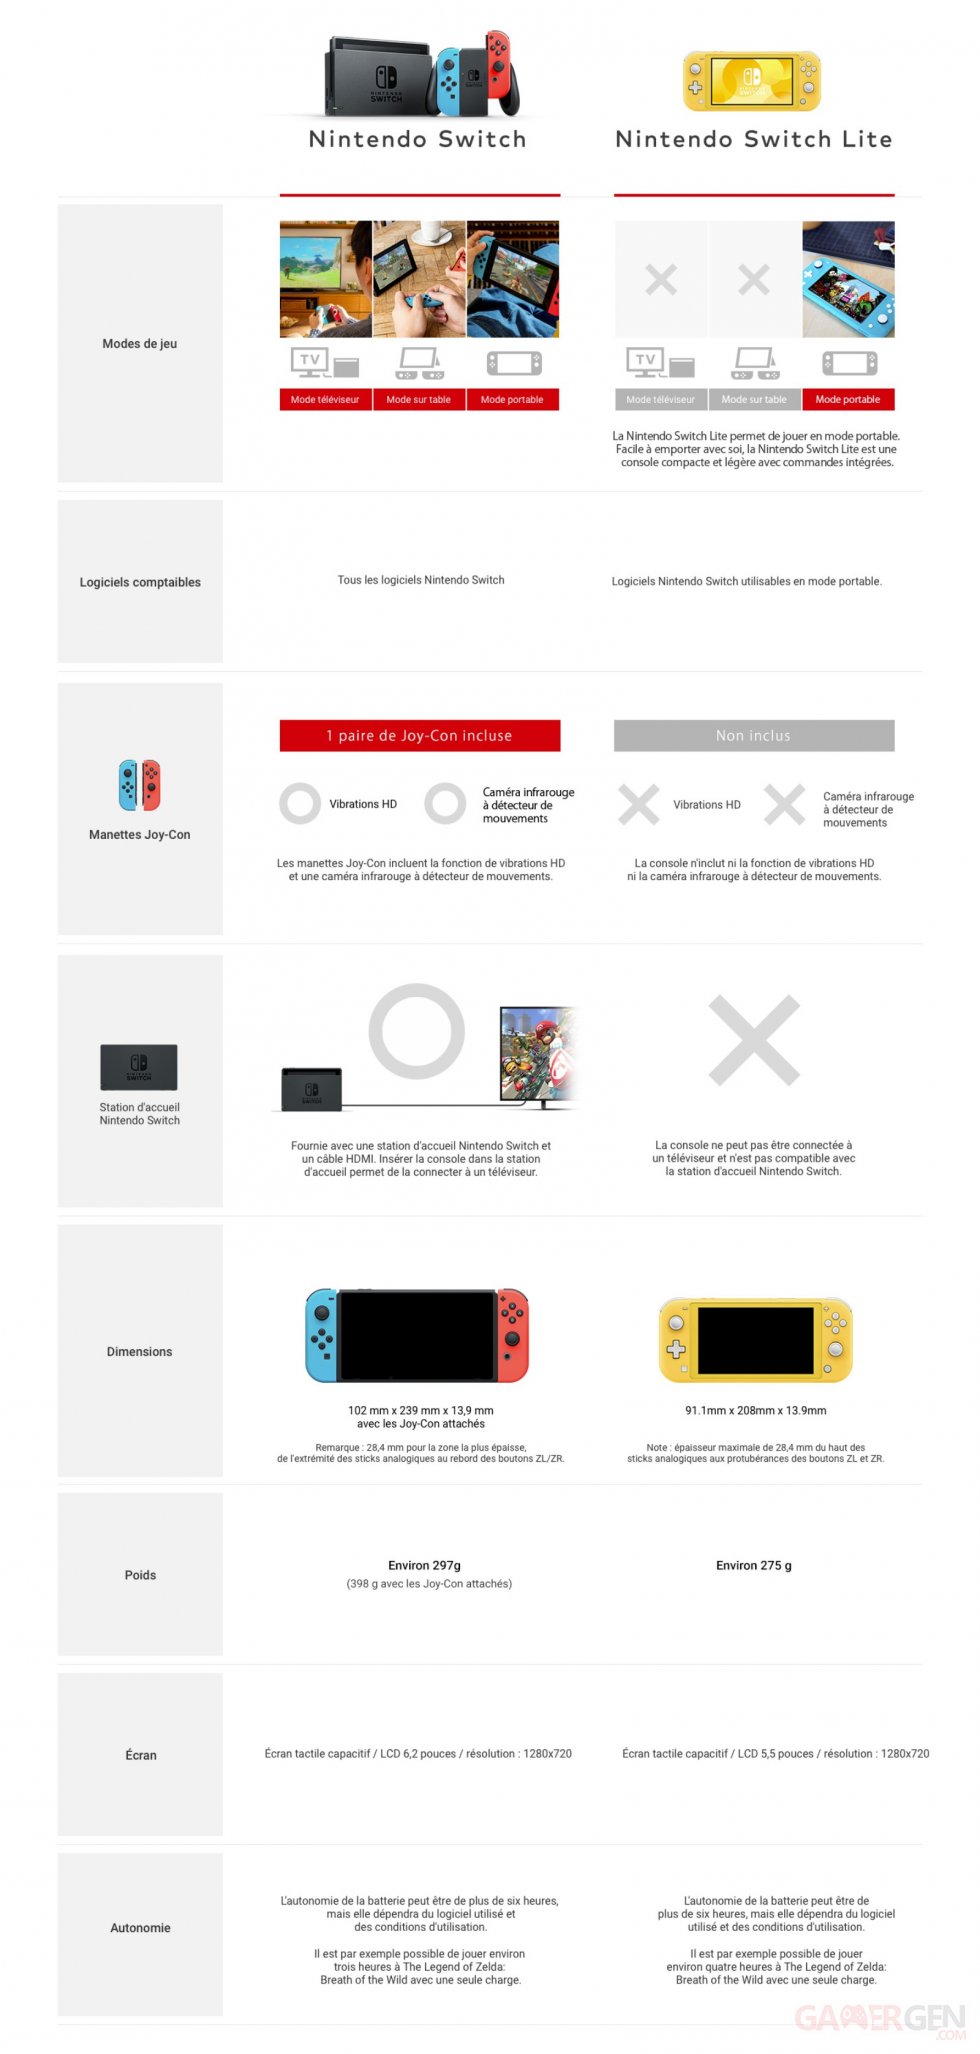 Nintendo-Switch-Lite-comparaison_infographie-officielle